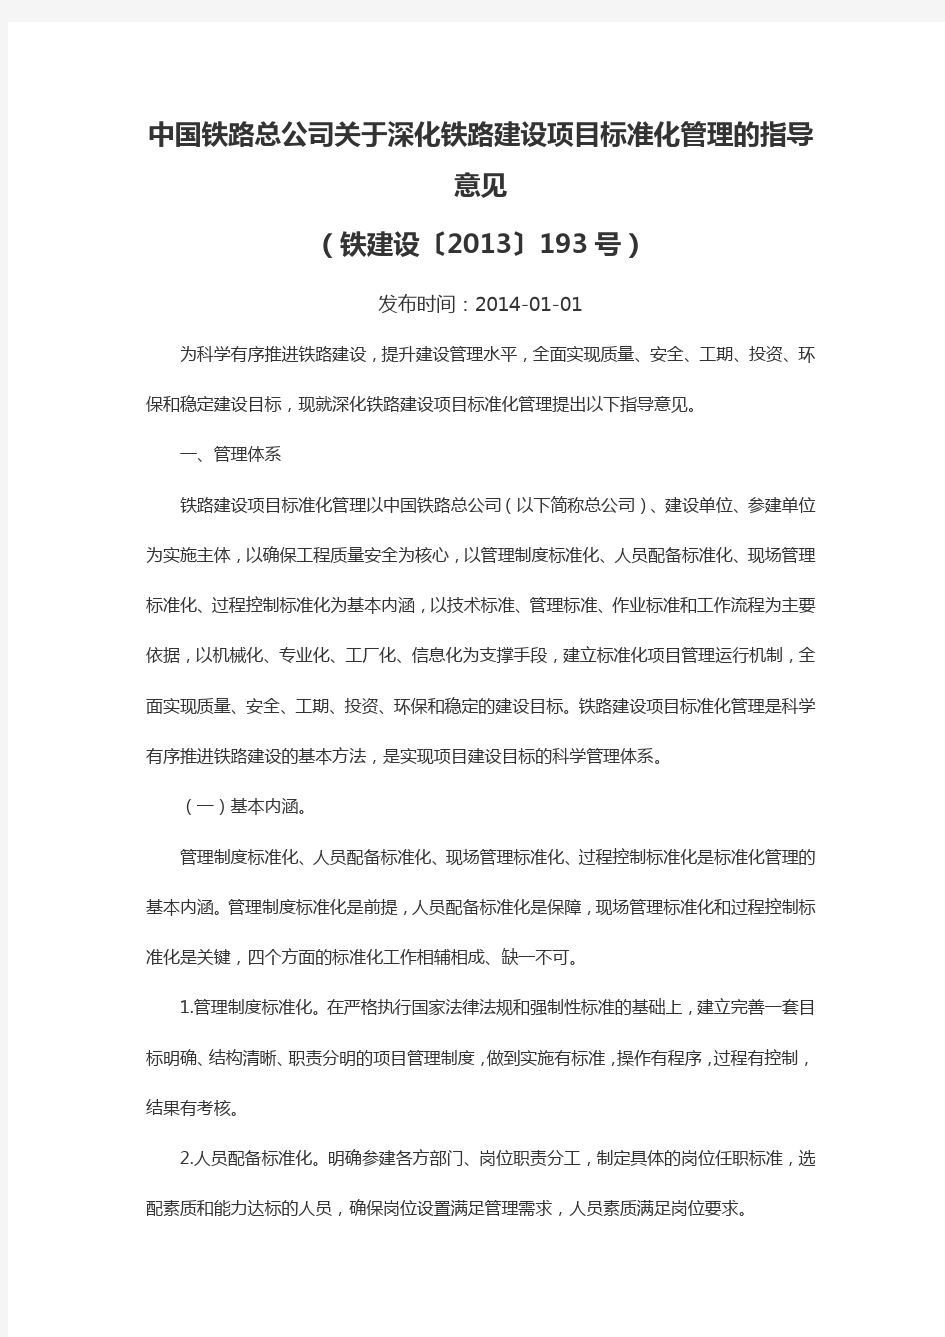 中国铁路总公司深化铁路建设项目标准化管理的指导意见